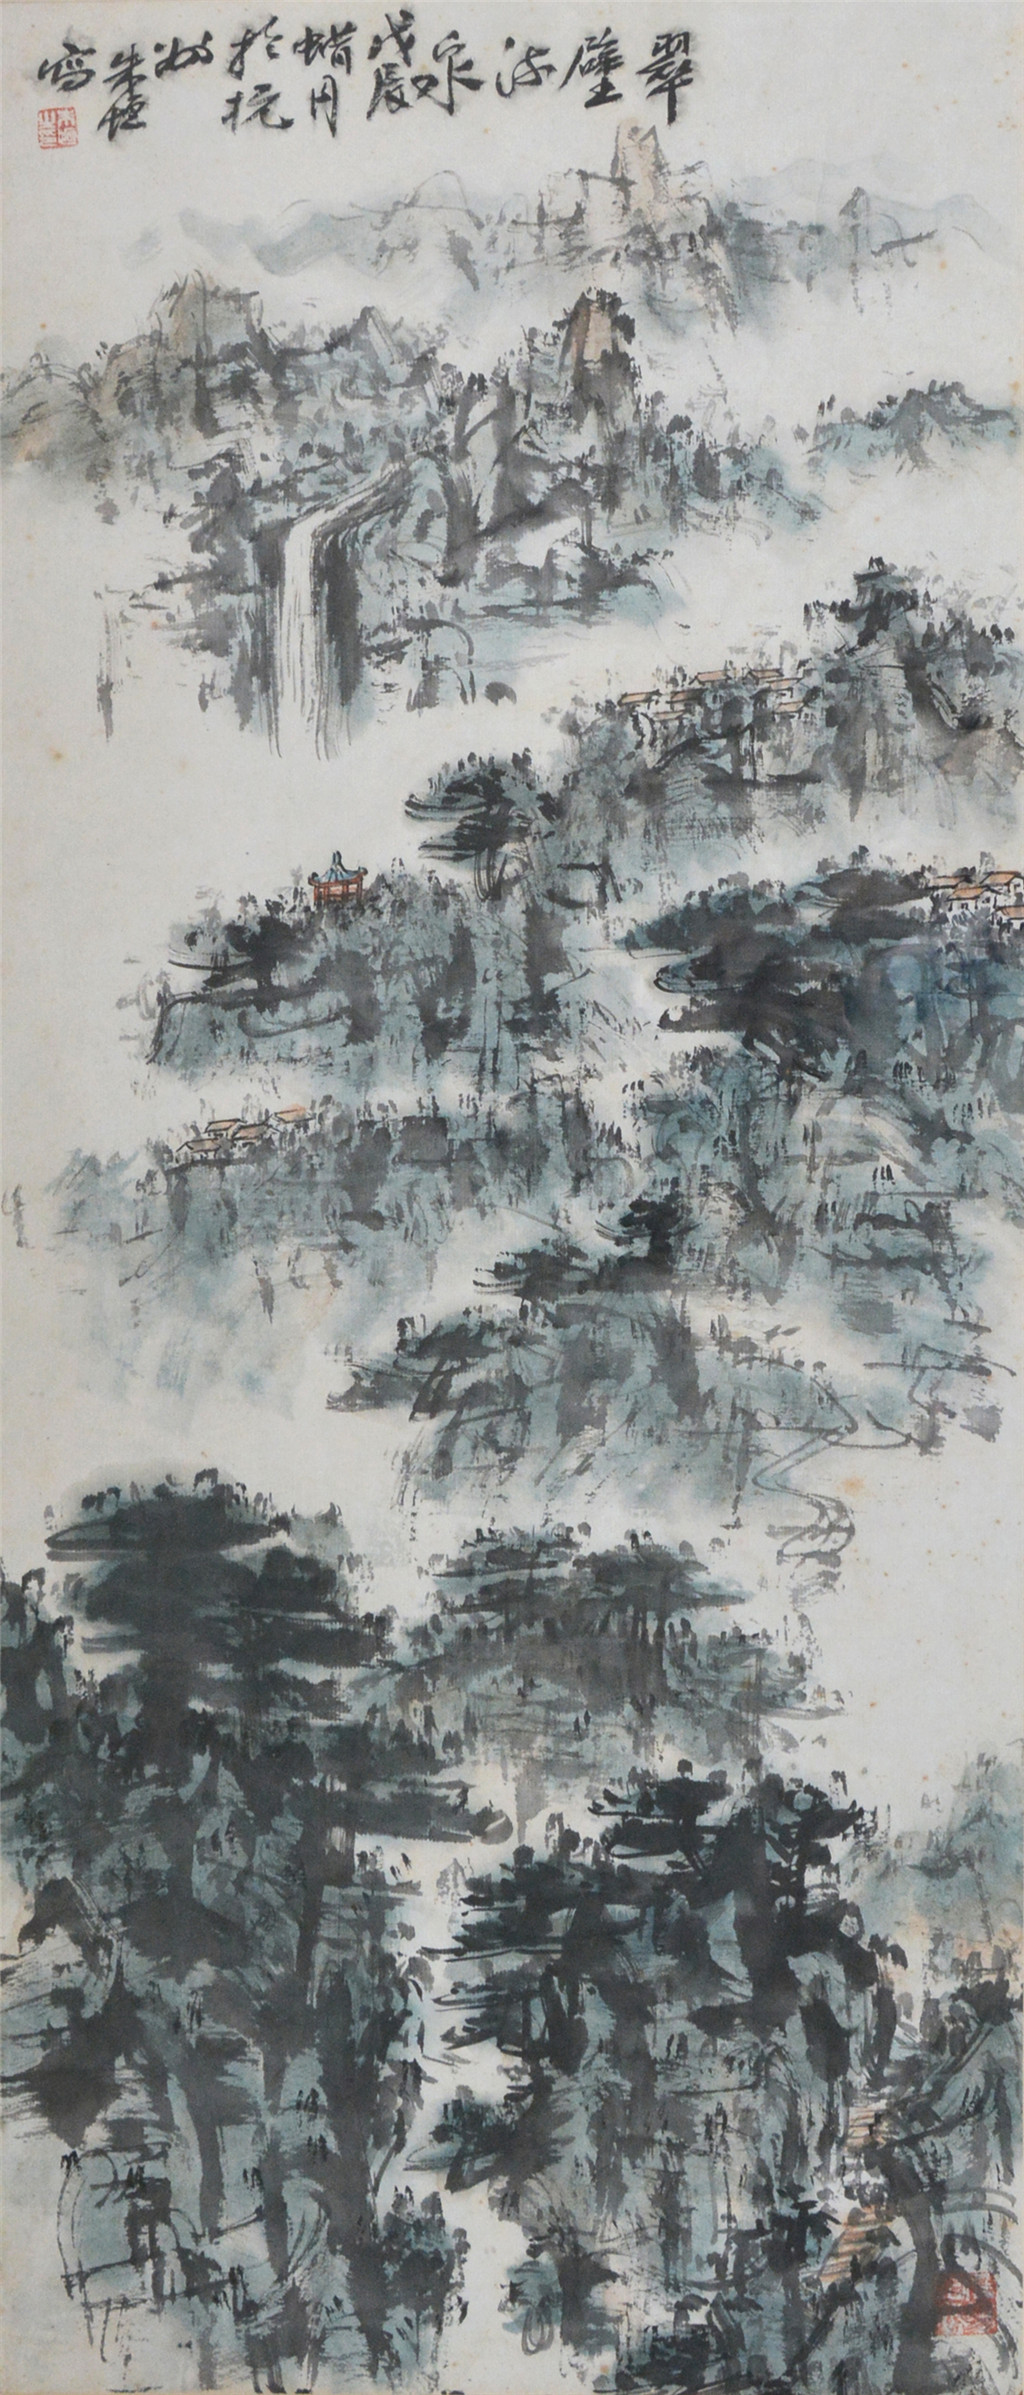 朱恒 (1916-1993) 翠壁流泉图  